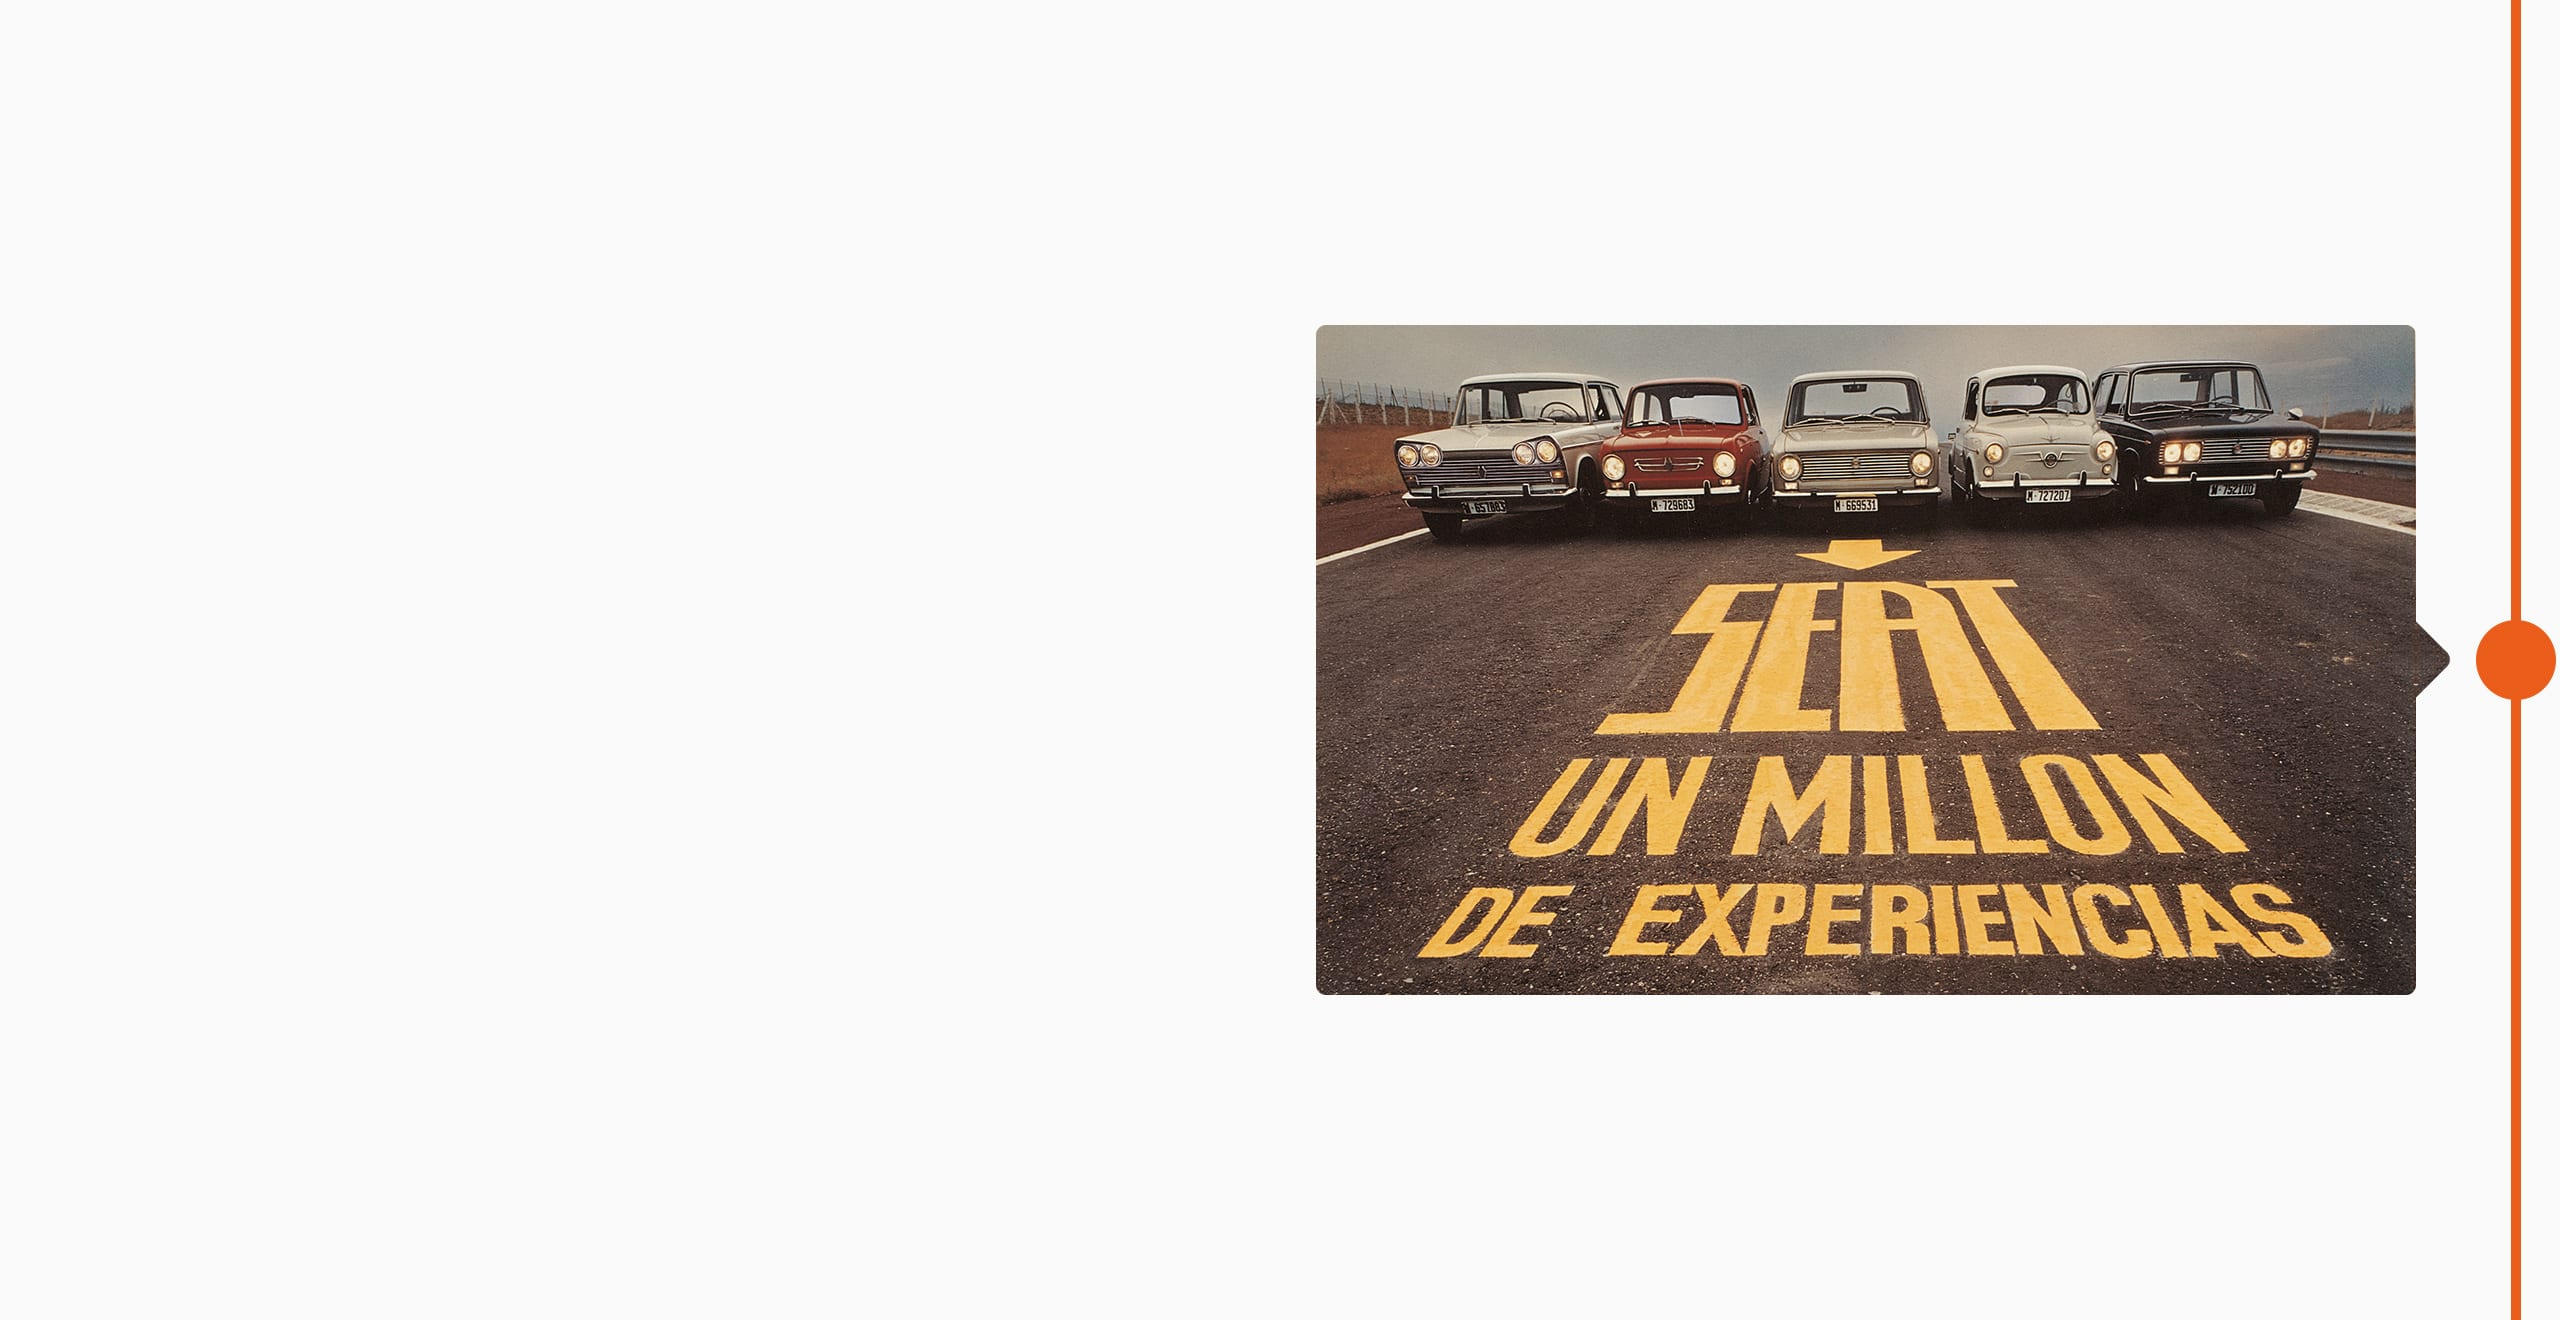 SEAT Historia de la marca 1974: cinco autos clásicos alineados en una calle, un millón de experiencias.